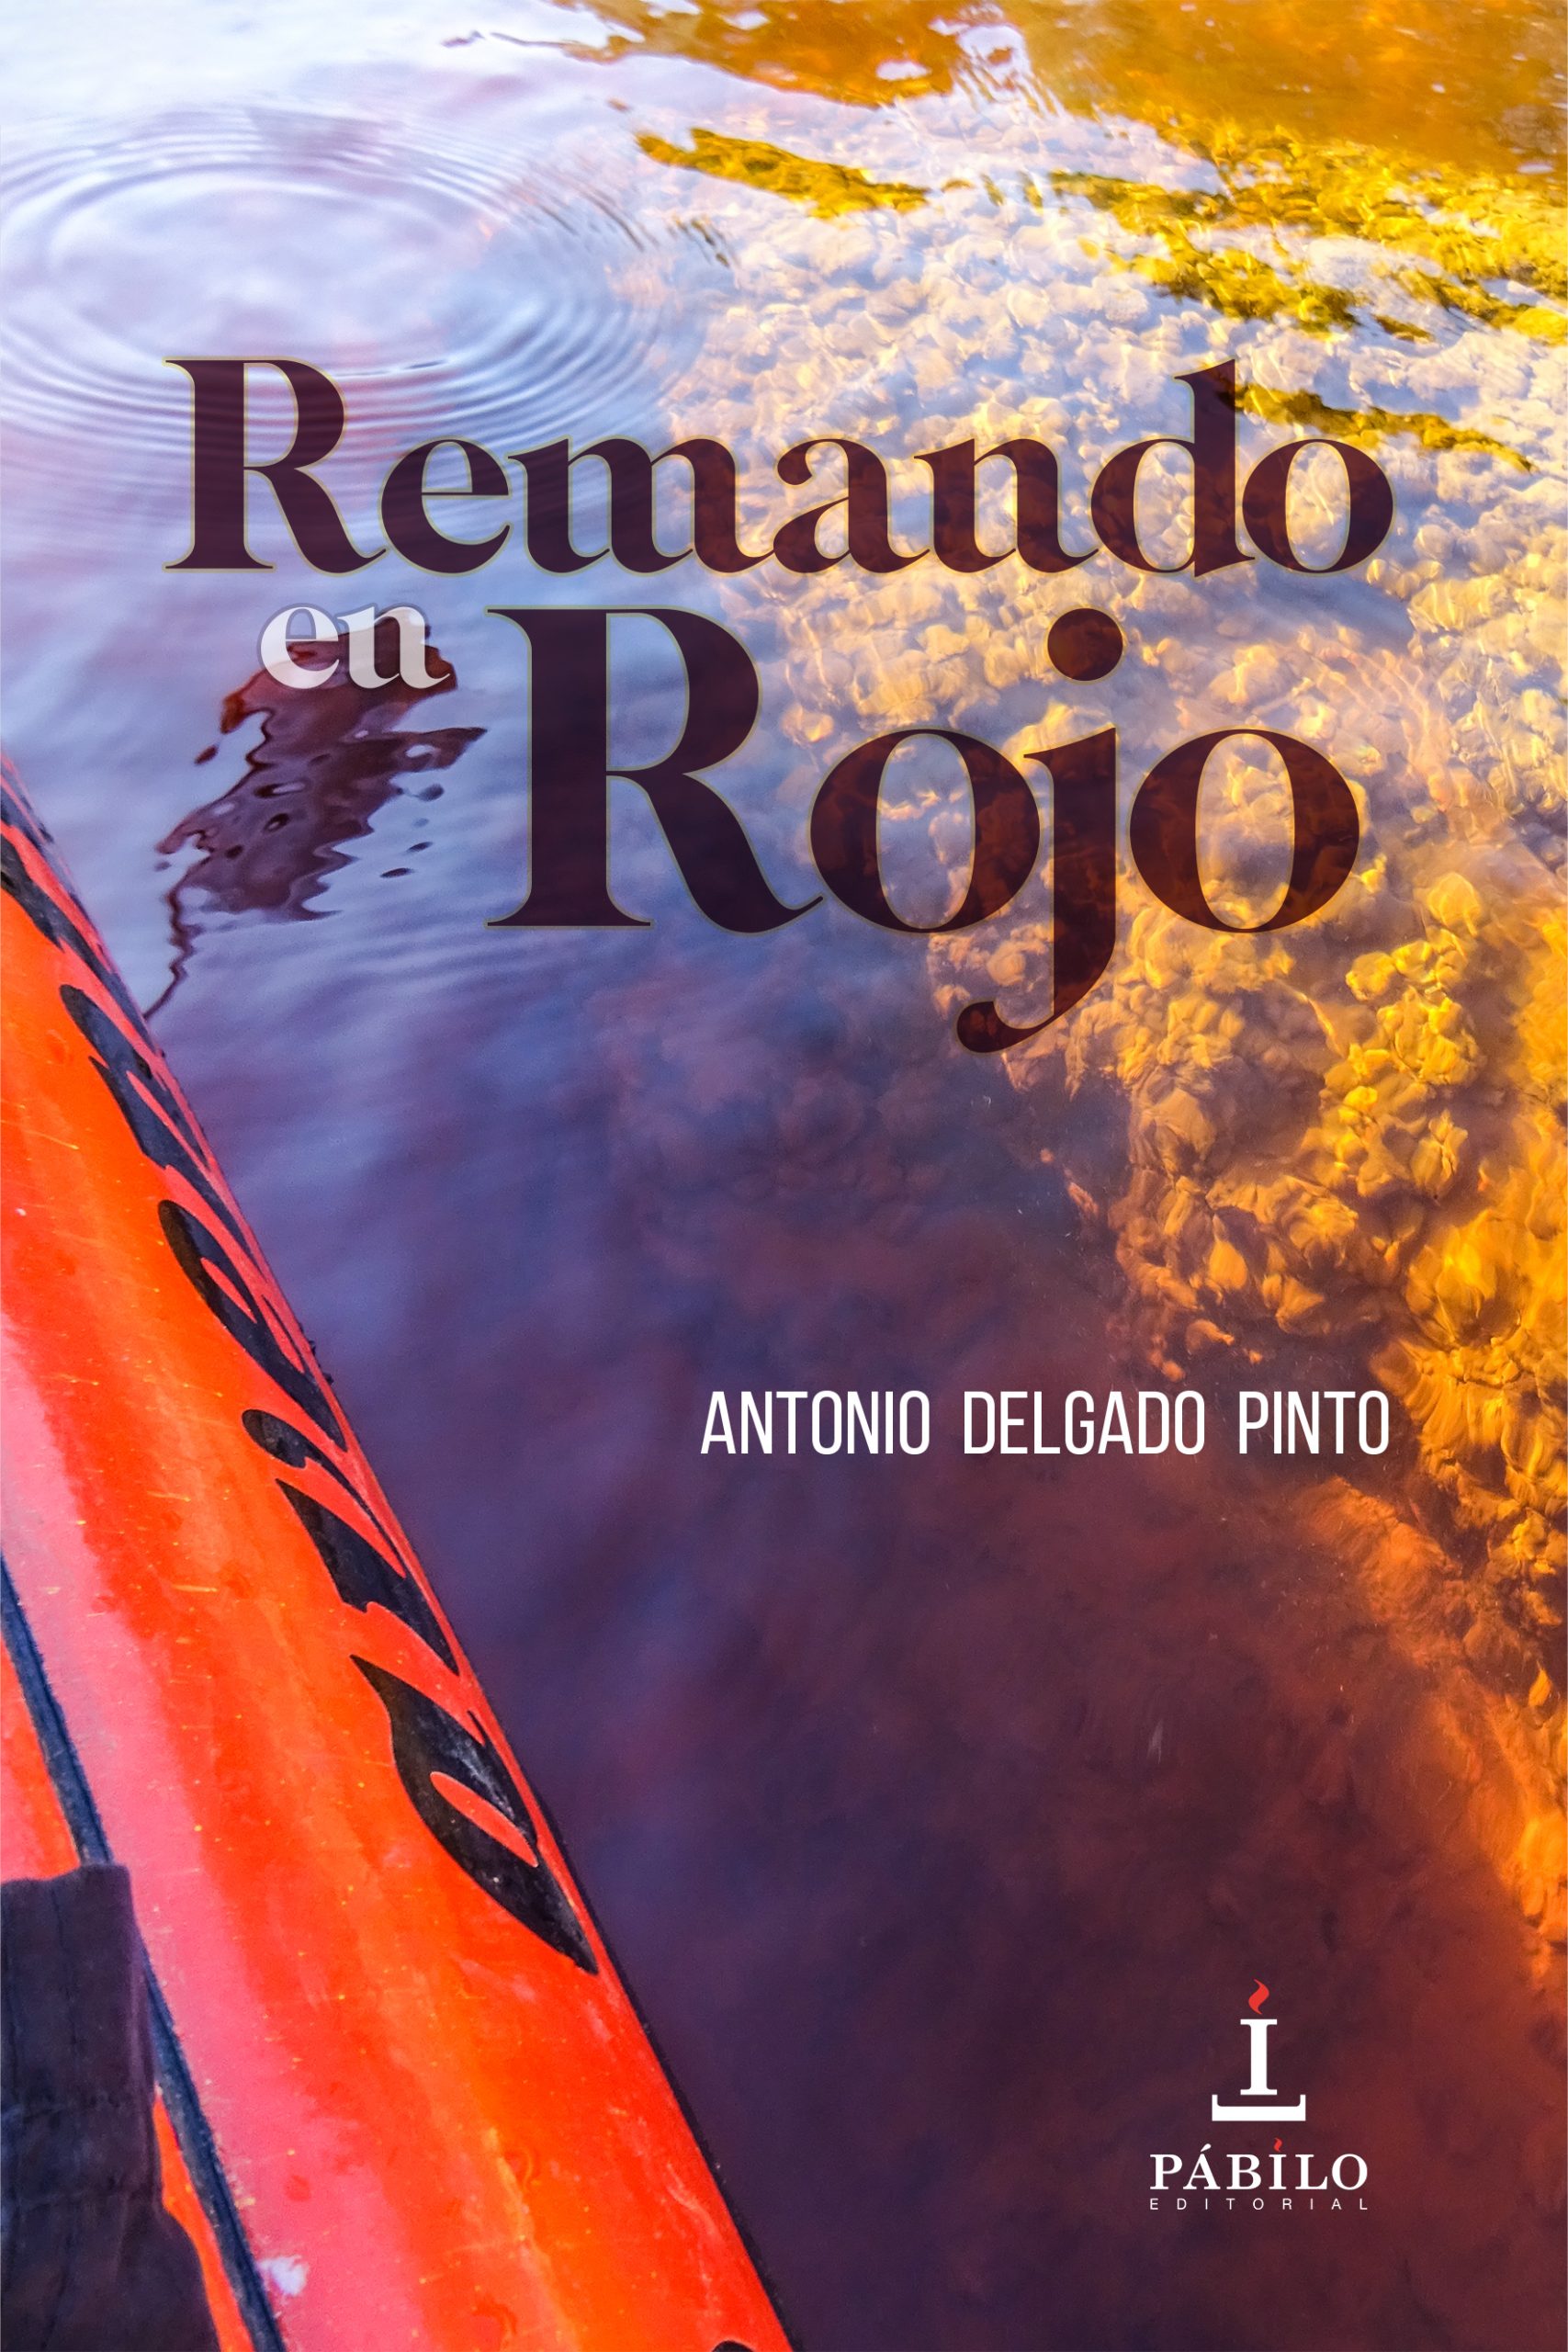 «Remando en Rojo», una obra que retrata la belleza del río Tinto a su paso por la comarca